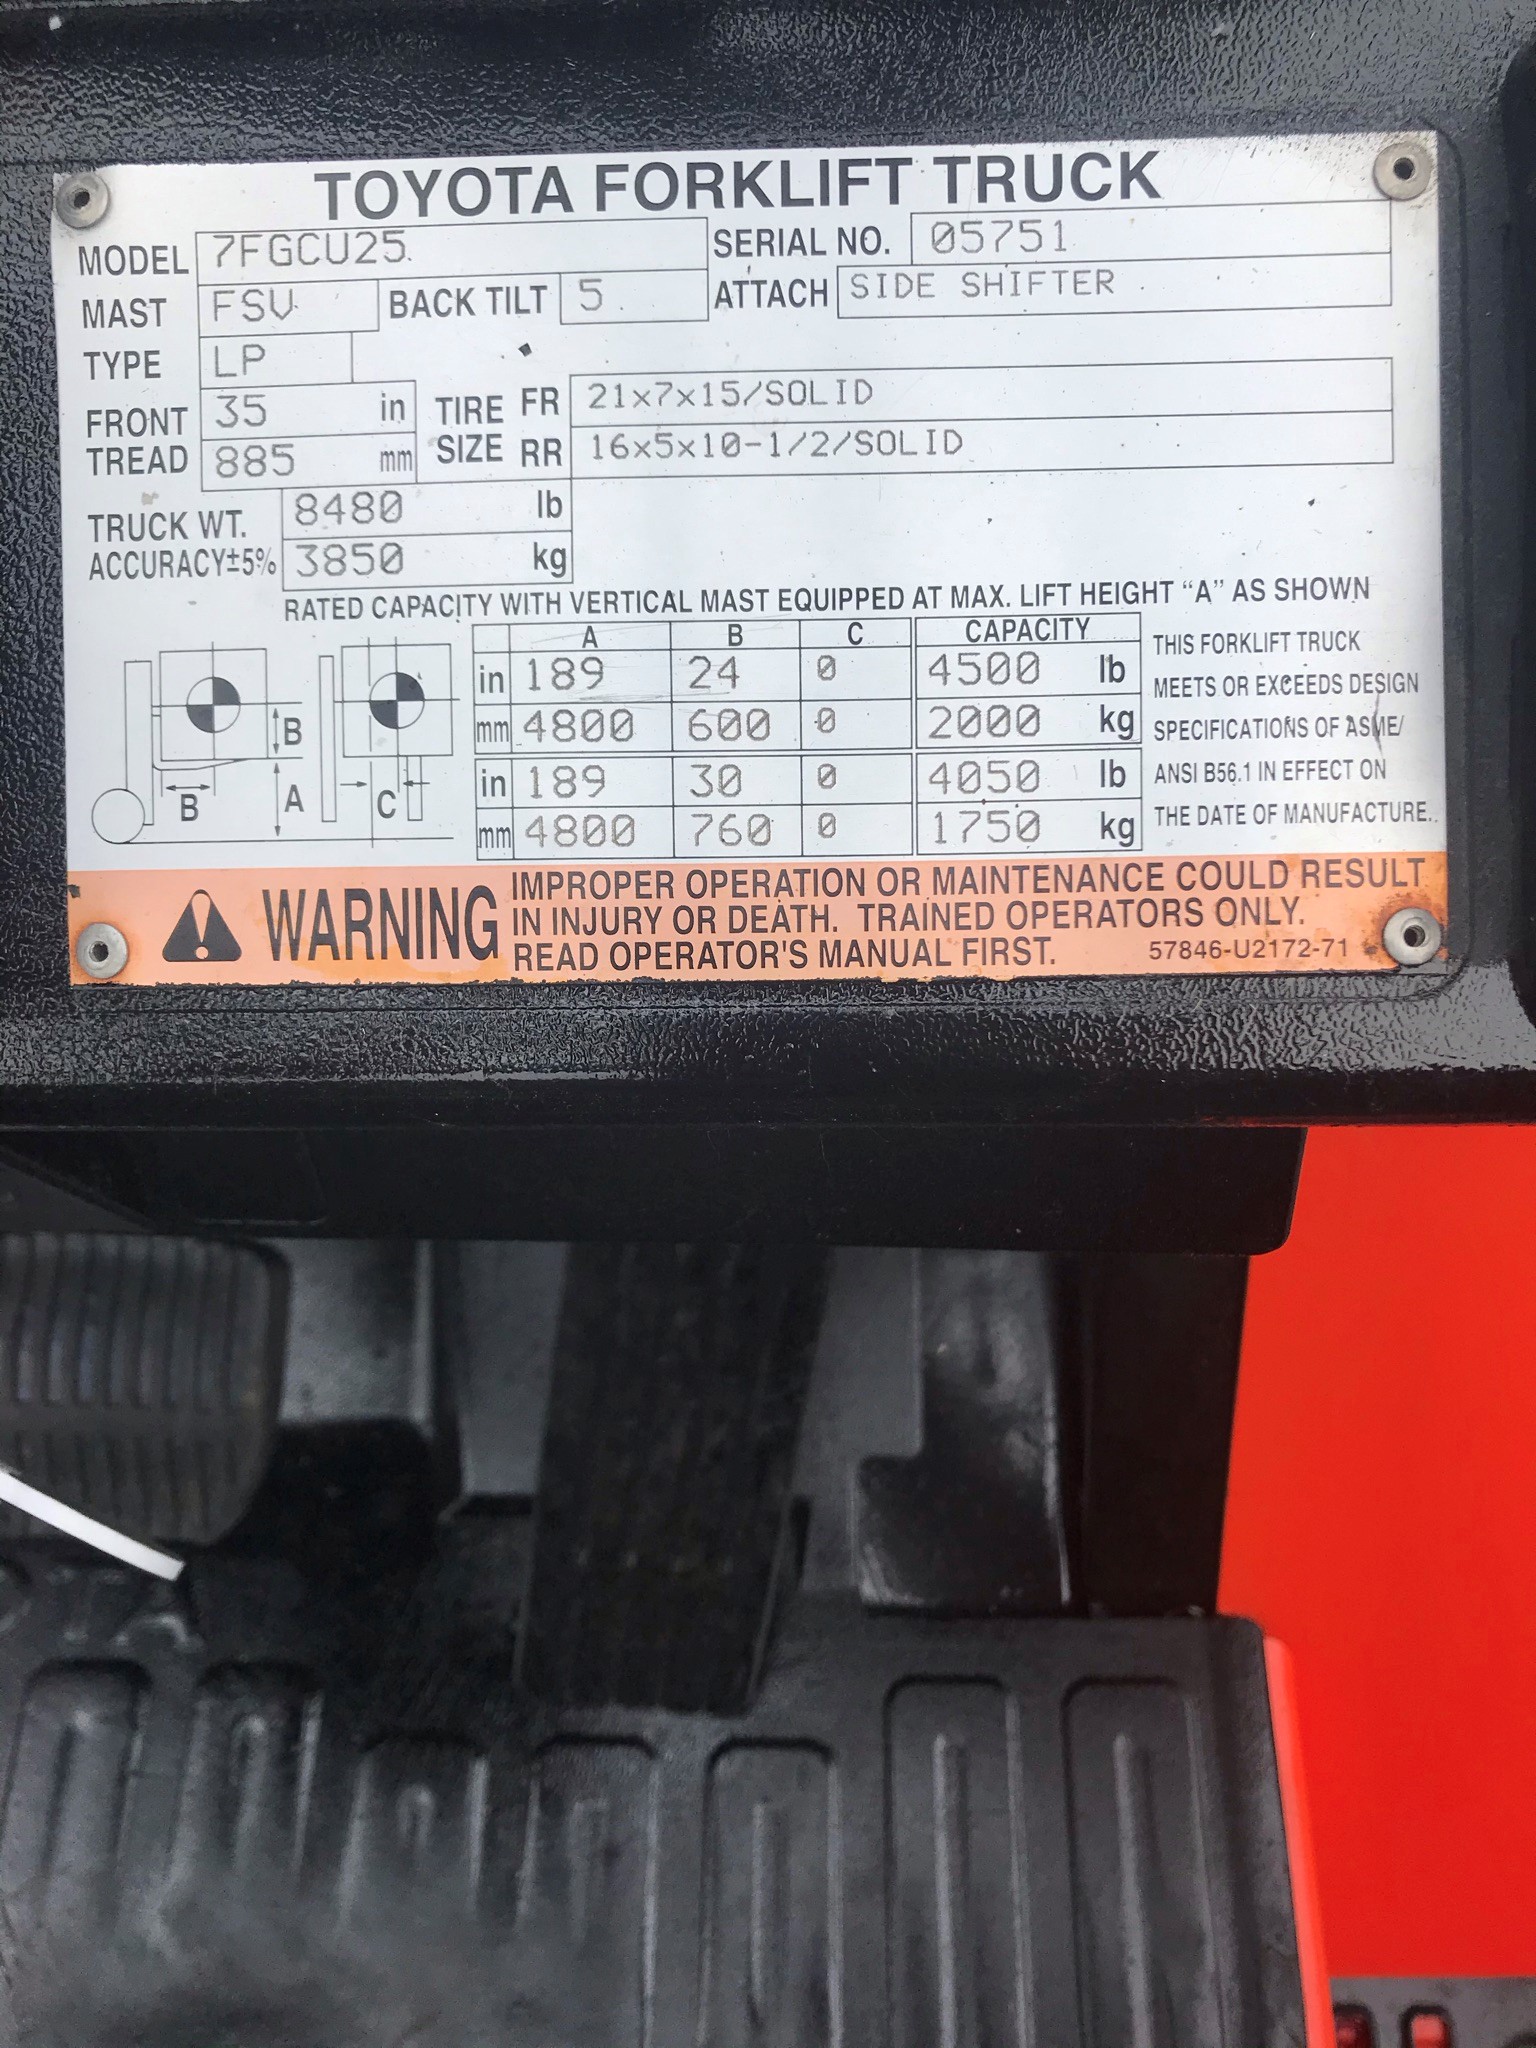 Model 7FGCU25 orange toyota forklift with serial number 05751 for sale